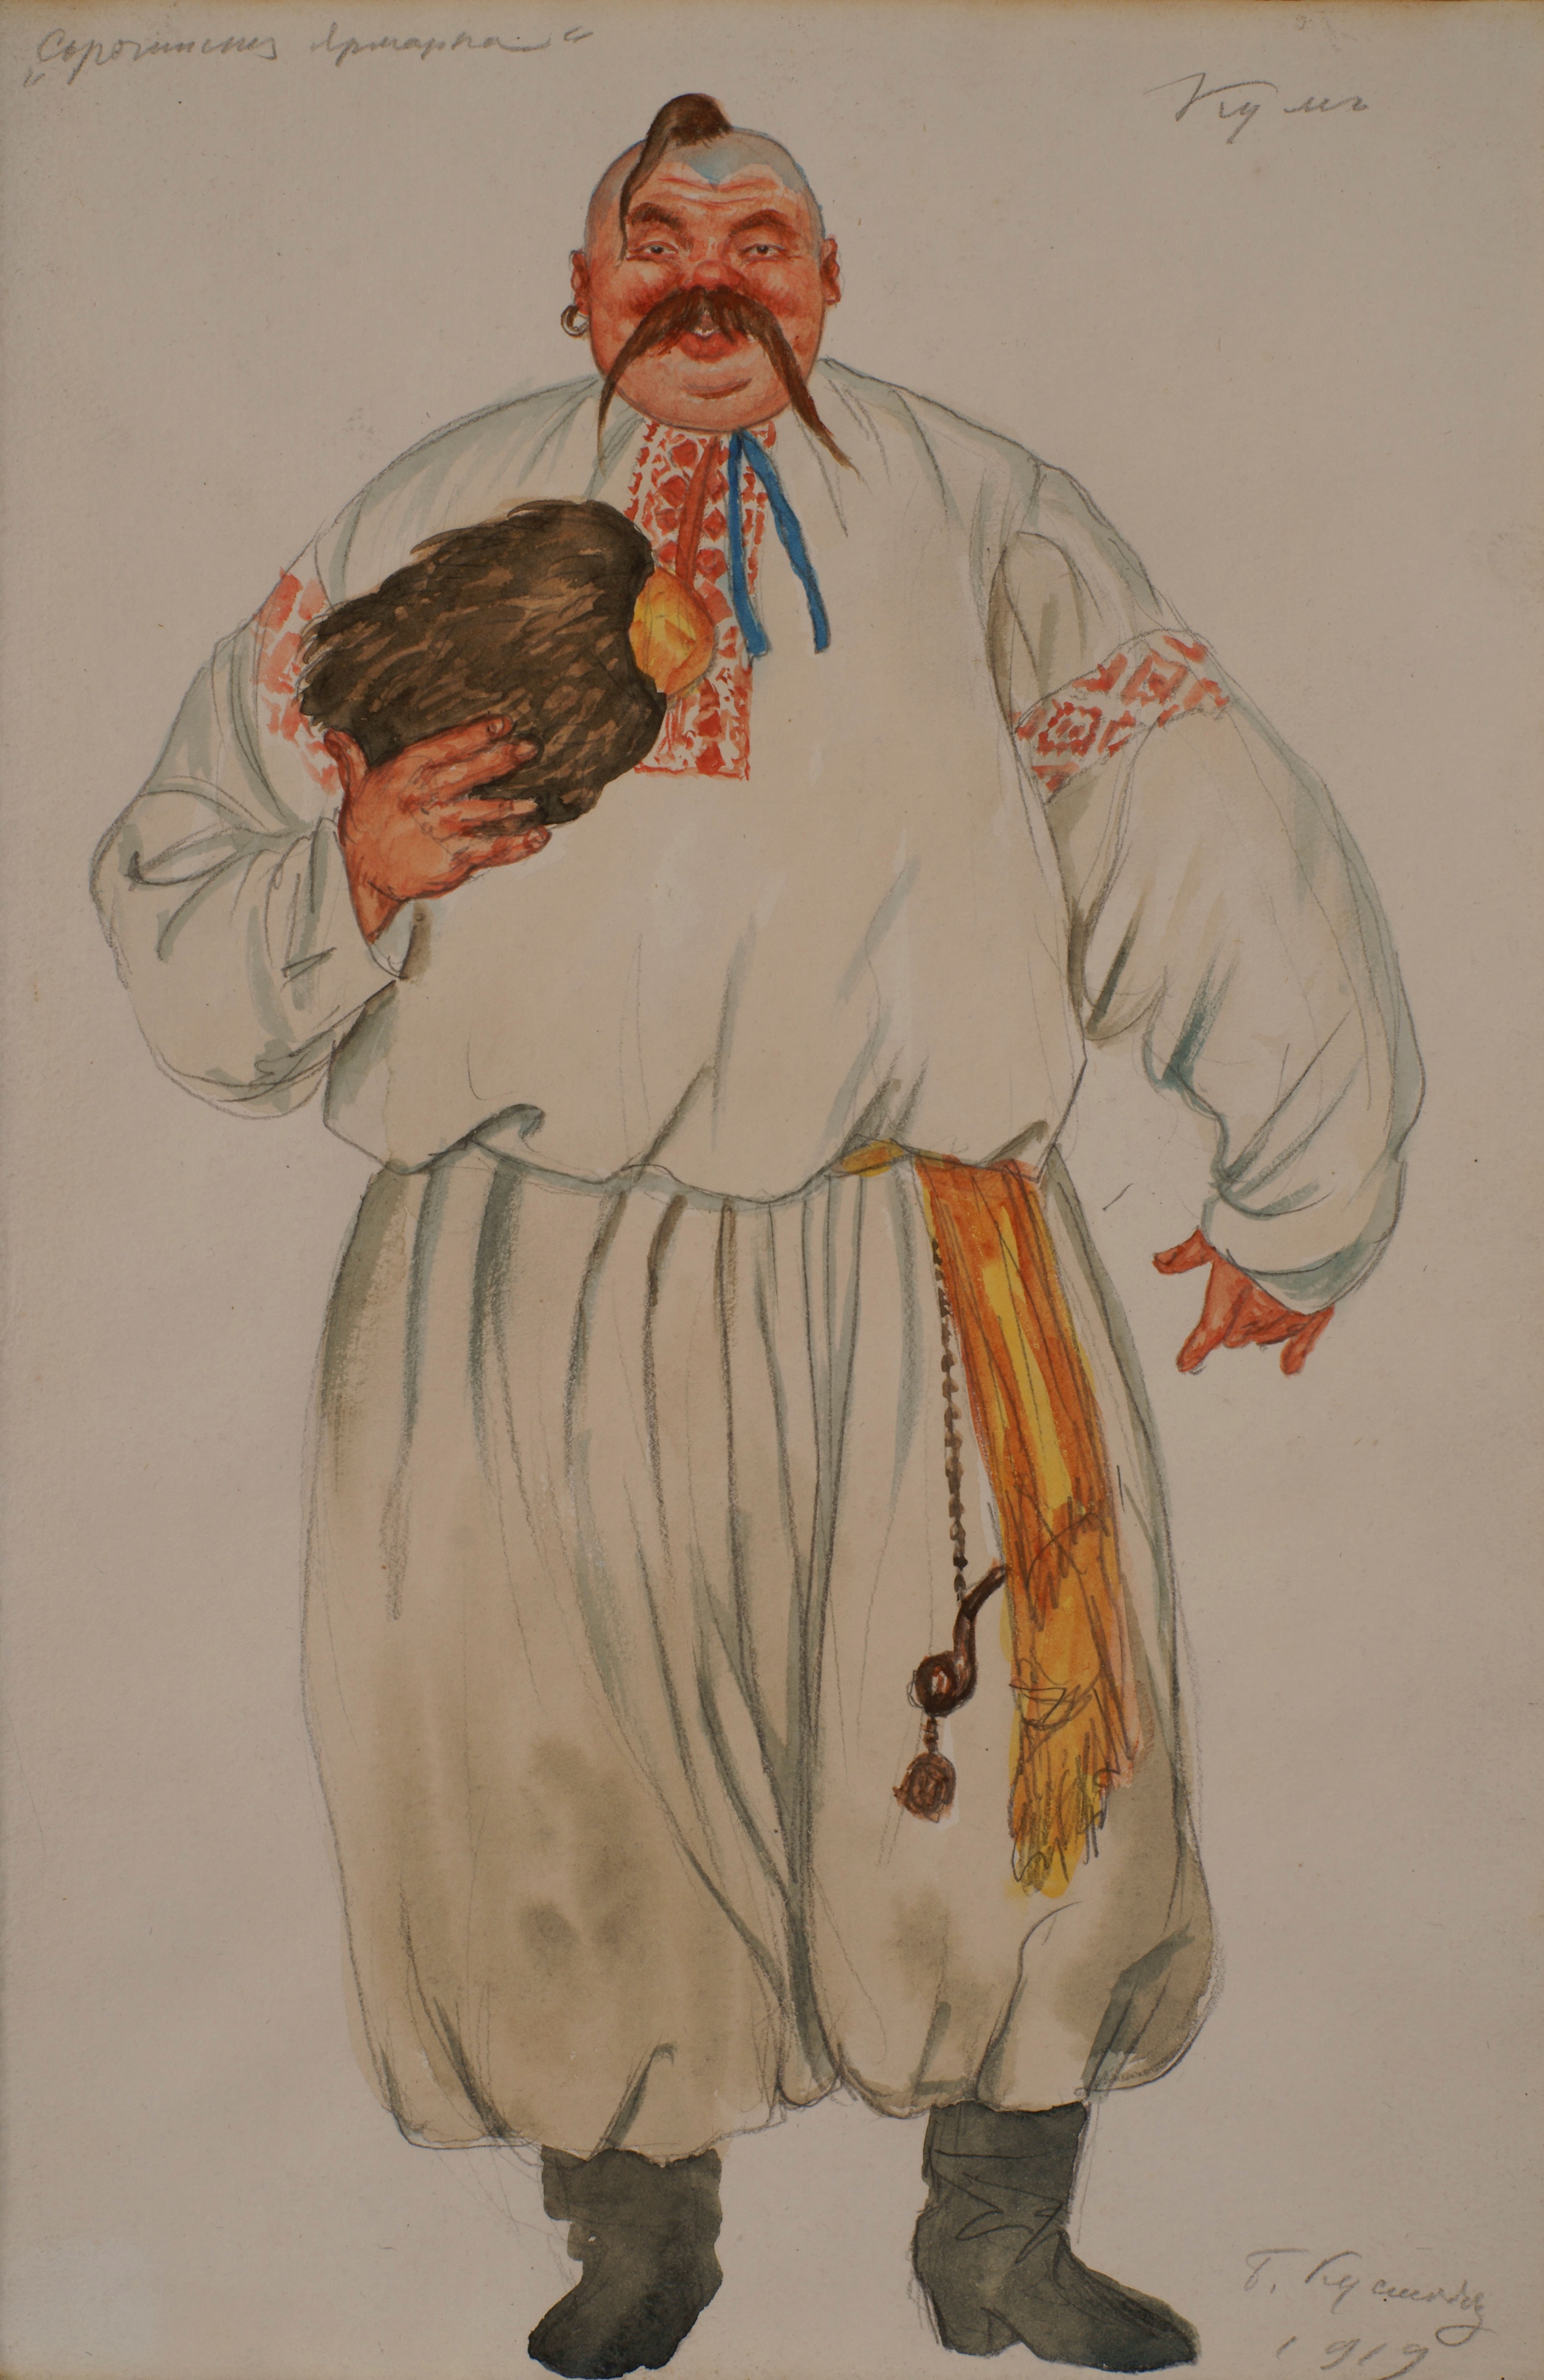 Bozzetto (1919) per un costume dell’opera "La fiera di Sorocintsy" di Modest Musorgskij. Artista: Kustodiev.